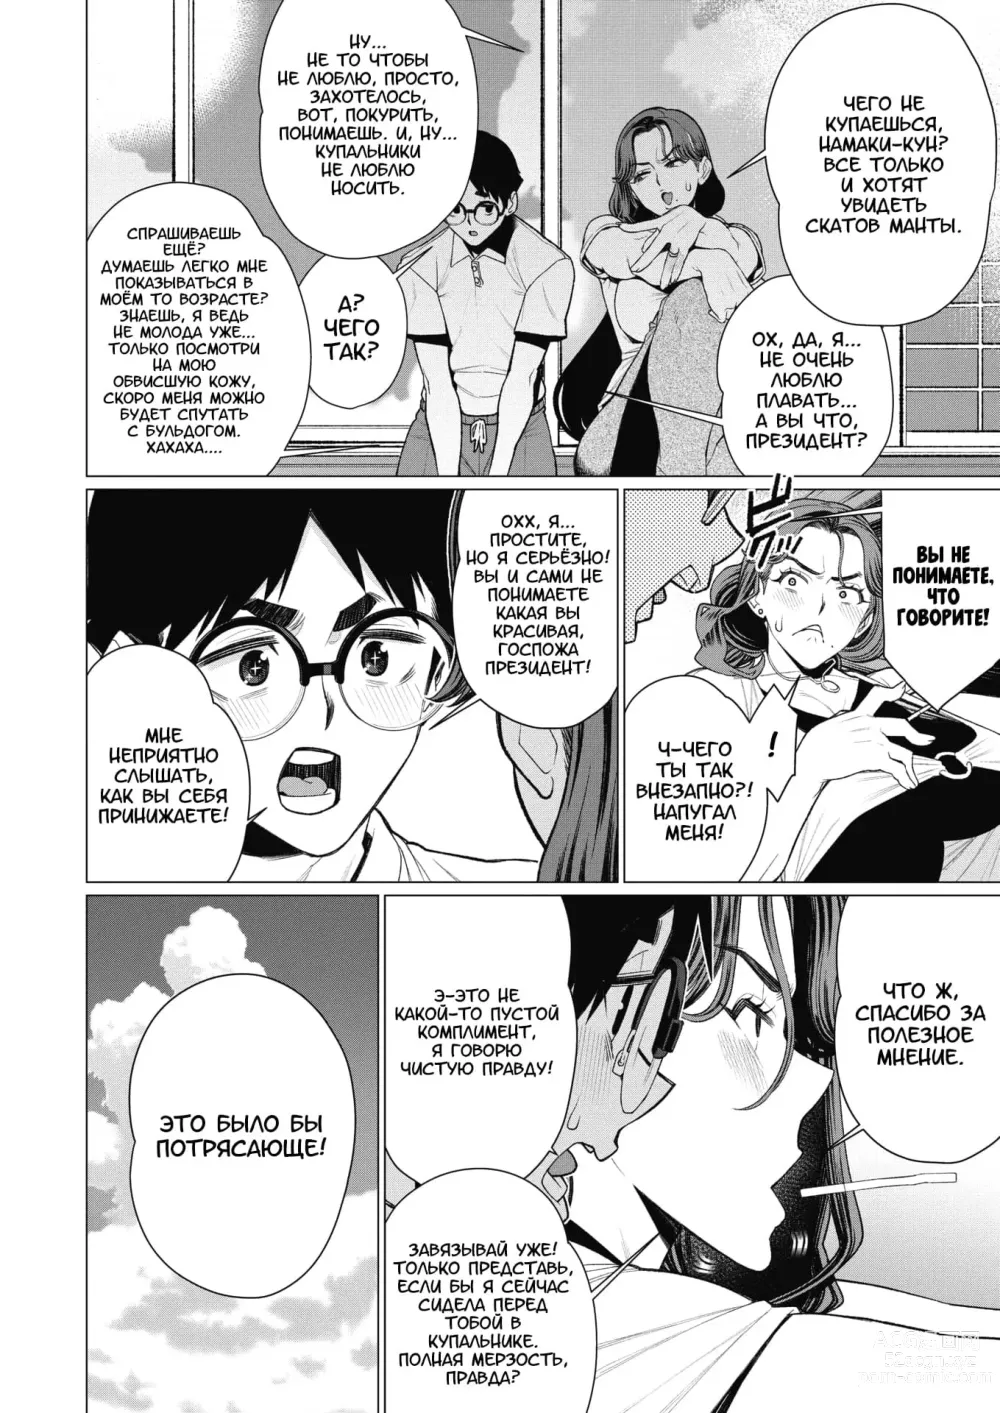 Page 4 of manga Госпожа Президент хочет, чтобы её заметили